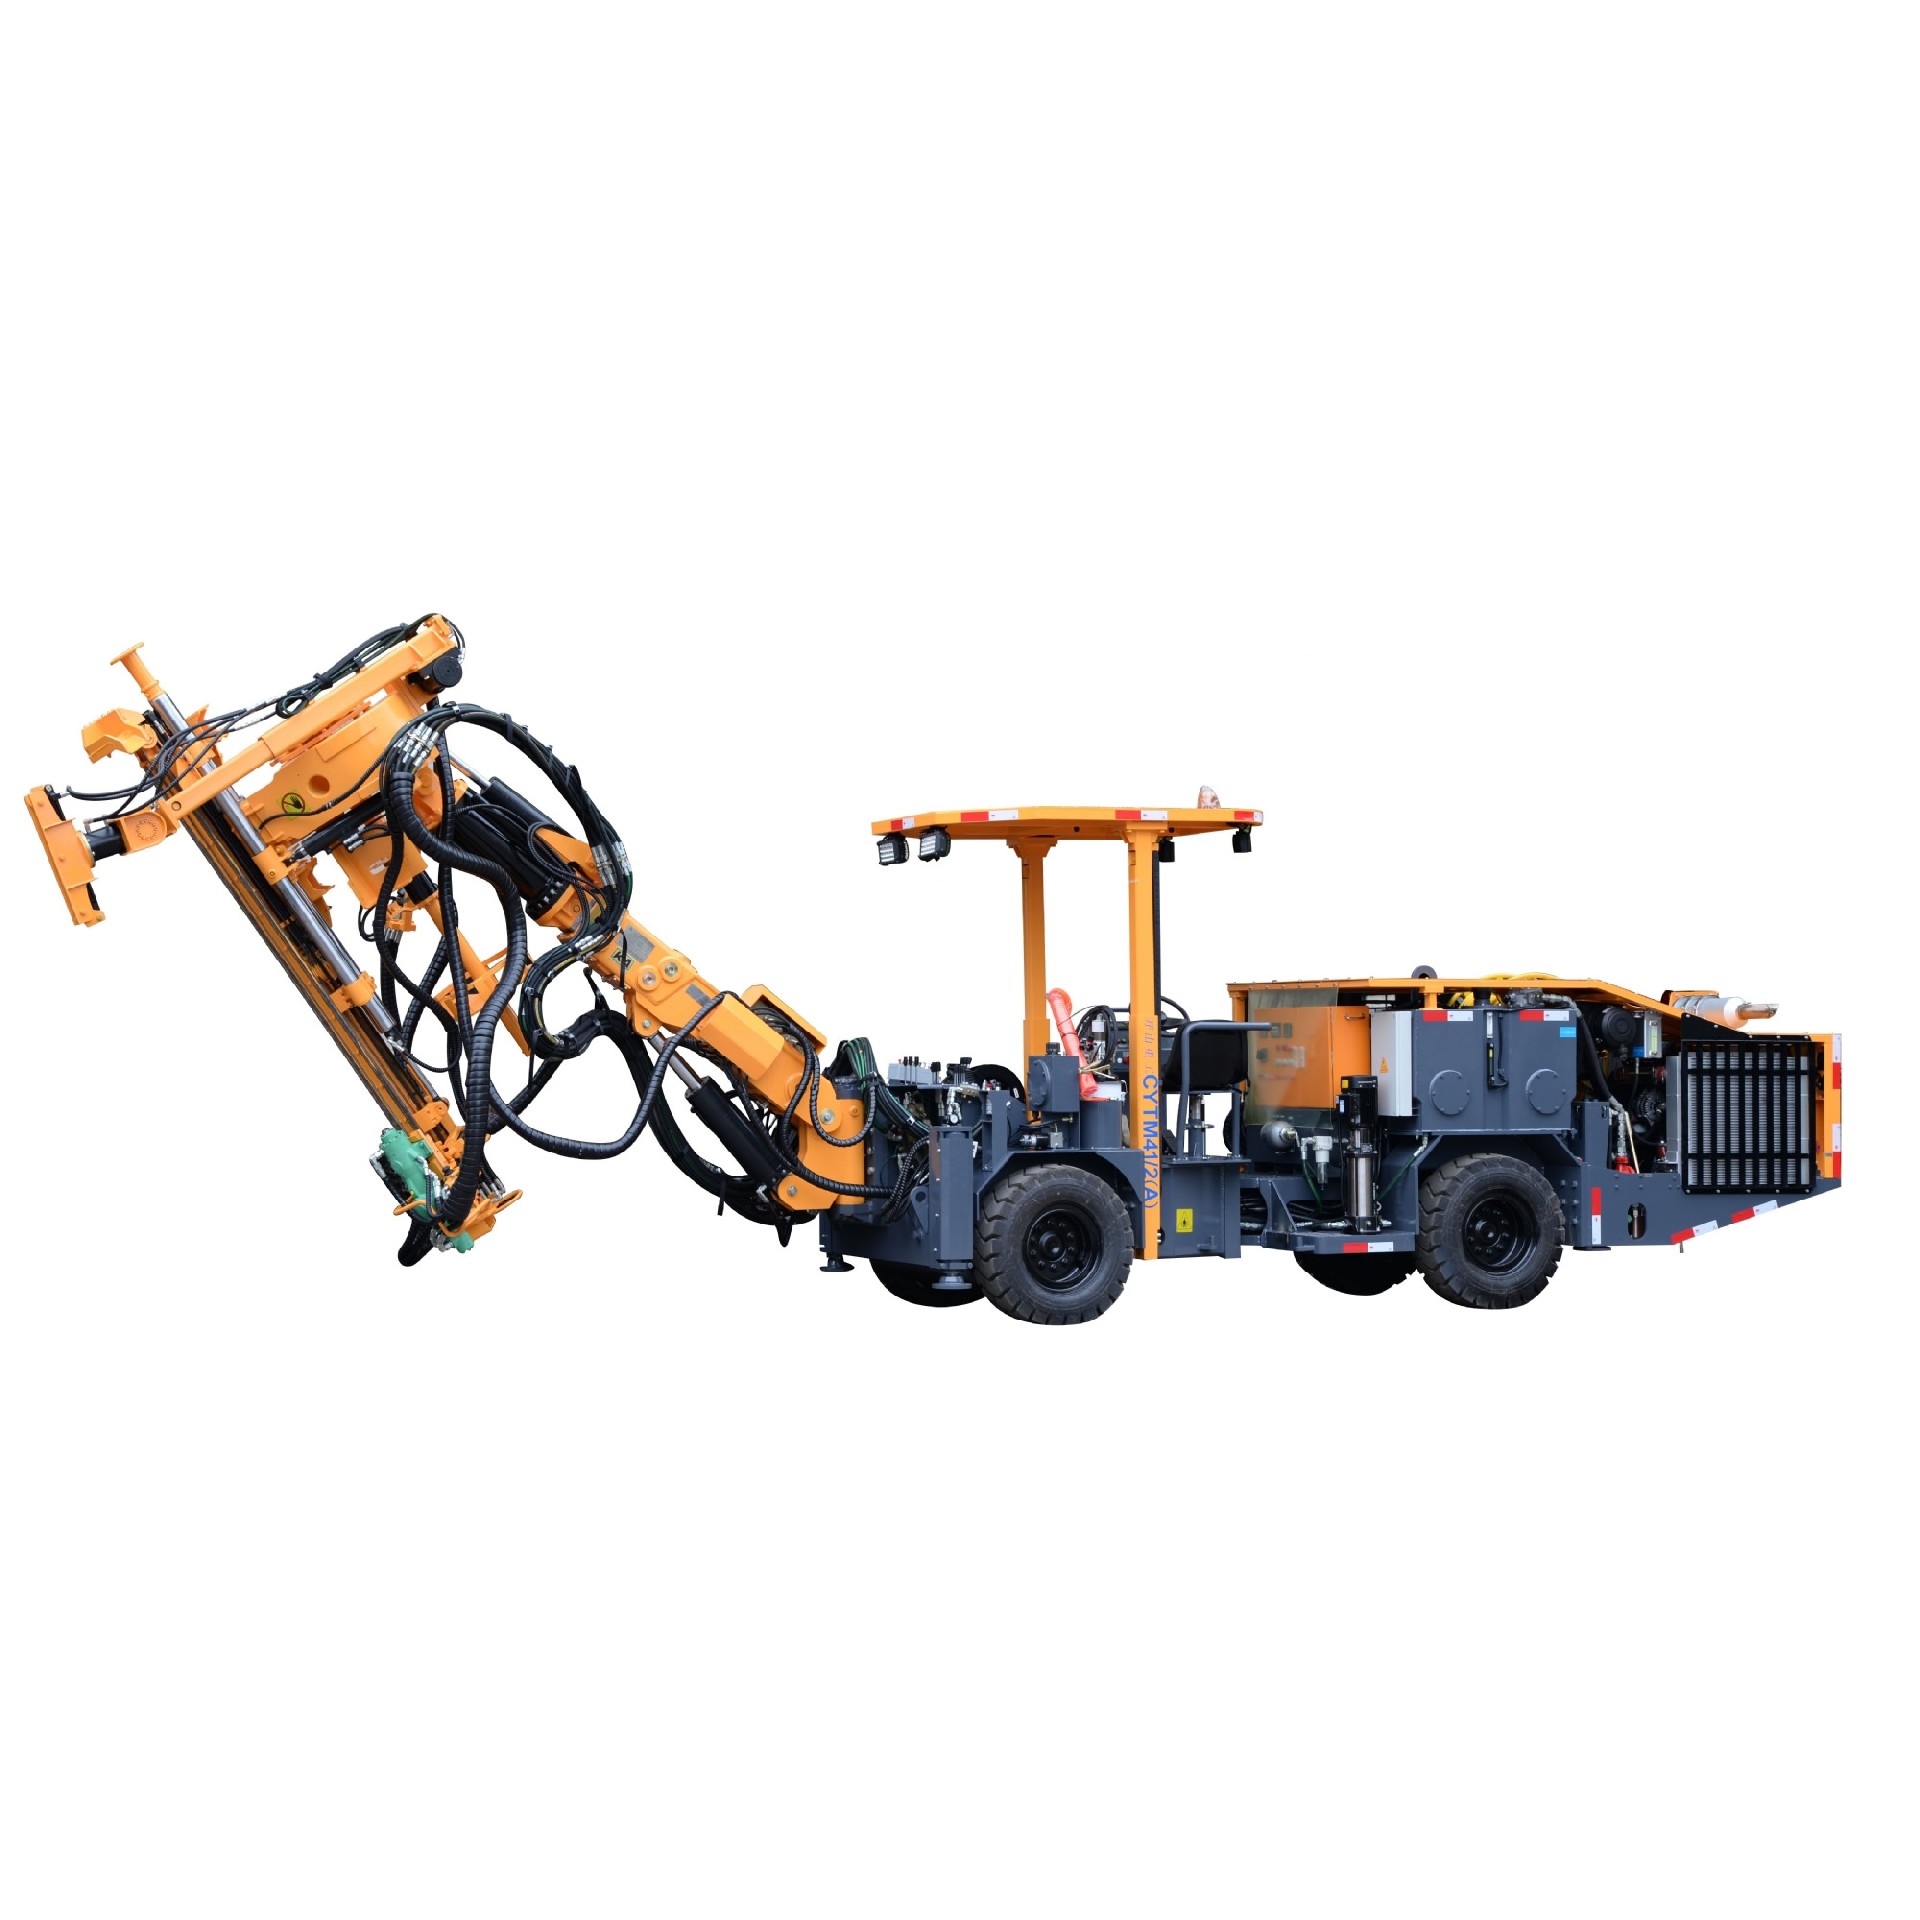 KG920B Open-Air Mining Crawler Drill Rig hydraulic drill rigs